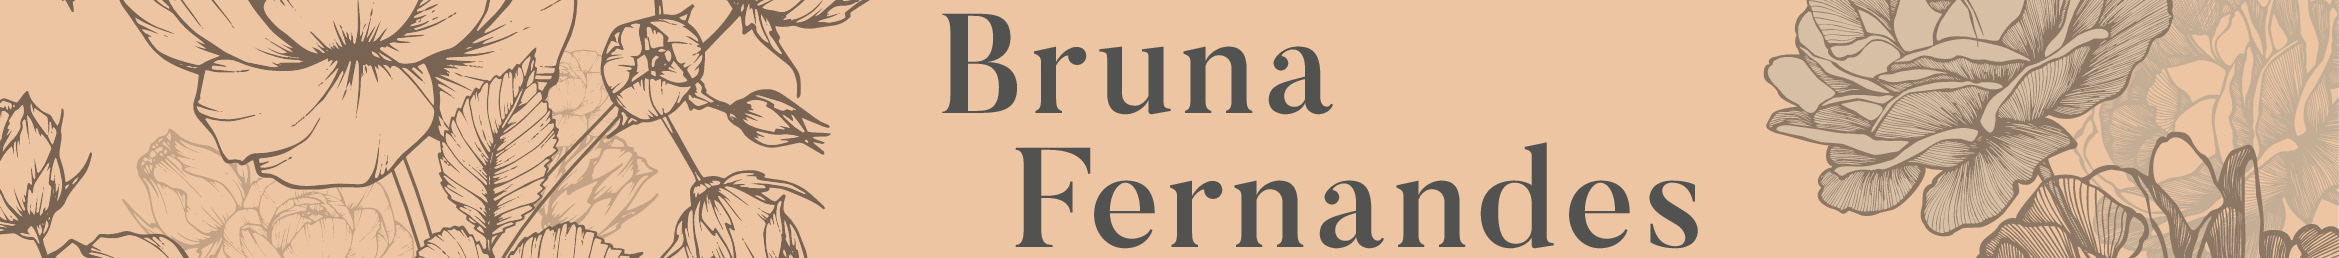 Bruna Fernandes's profile banner